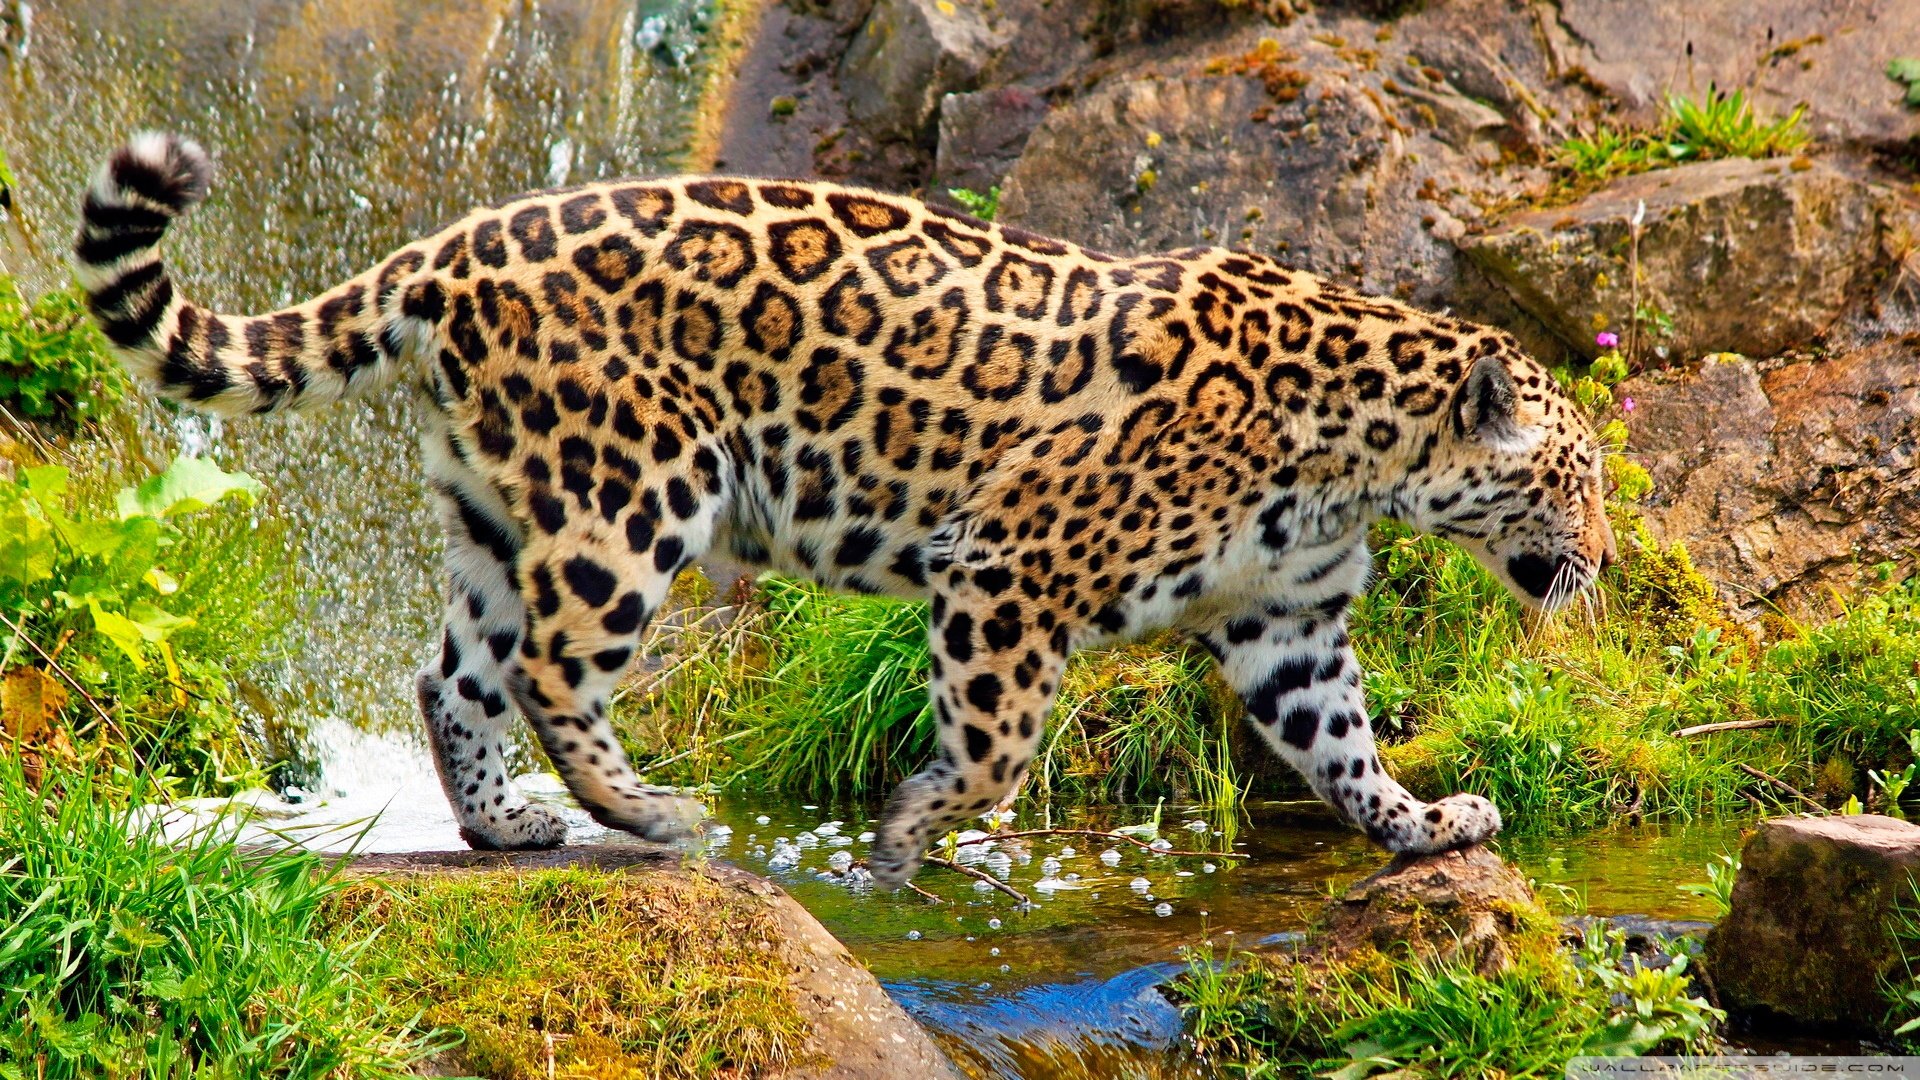 ジャガー動物hd壁紙1080p,陸生動物,野生動物,ジャガー,ヒョウ,ネコ科